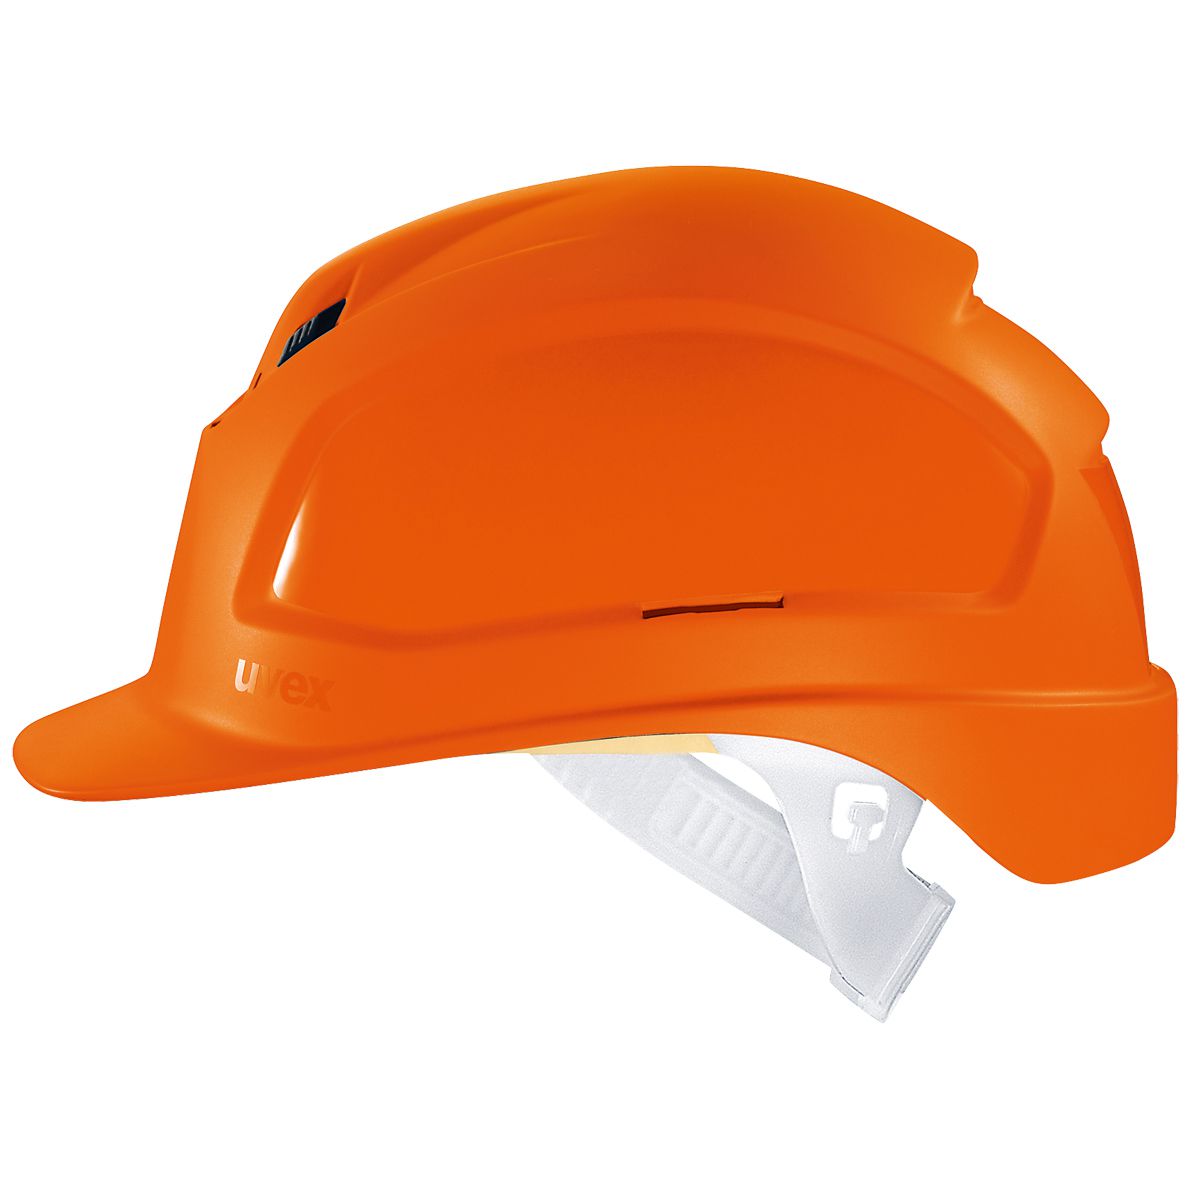 uvex pheos B Bauhelm - Robuster Schutzhelm für Bau & Industrie - EN 397 - Orange